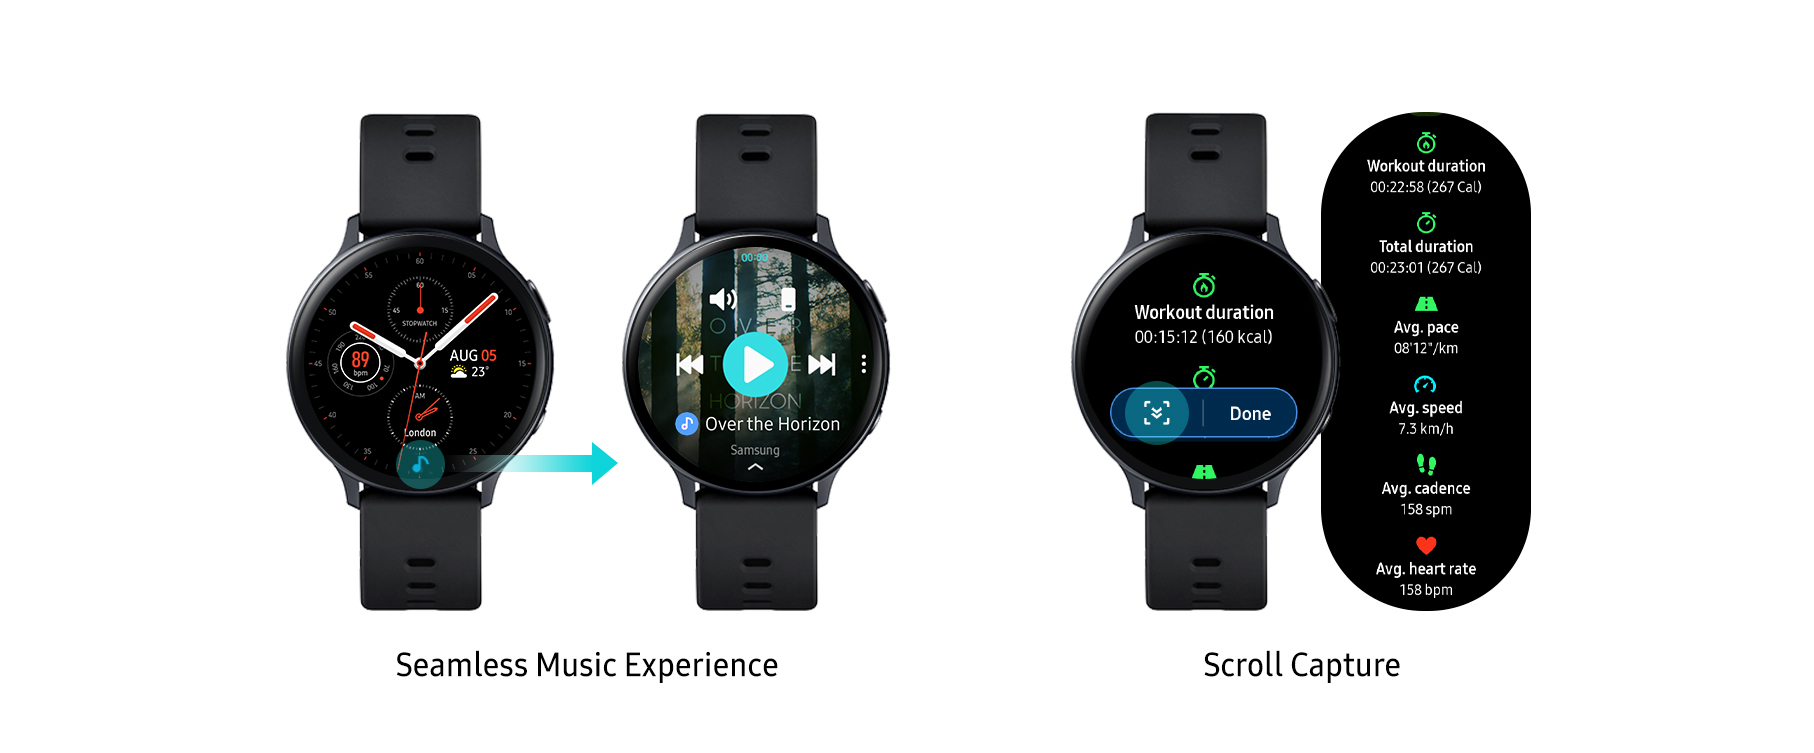 تحديثات جديدة لساعات Galaxy Watch Active2 تعزز قدرات الاتصال واللياقة البدنية للمستخدمين